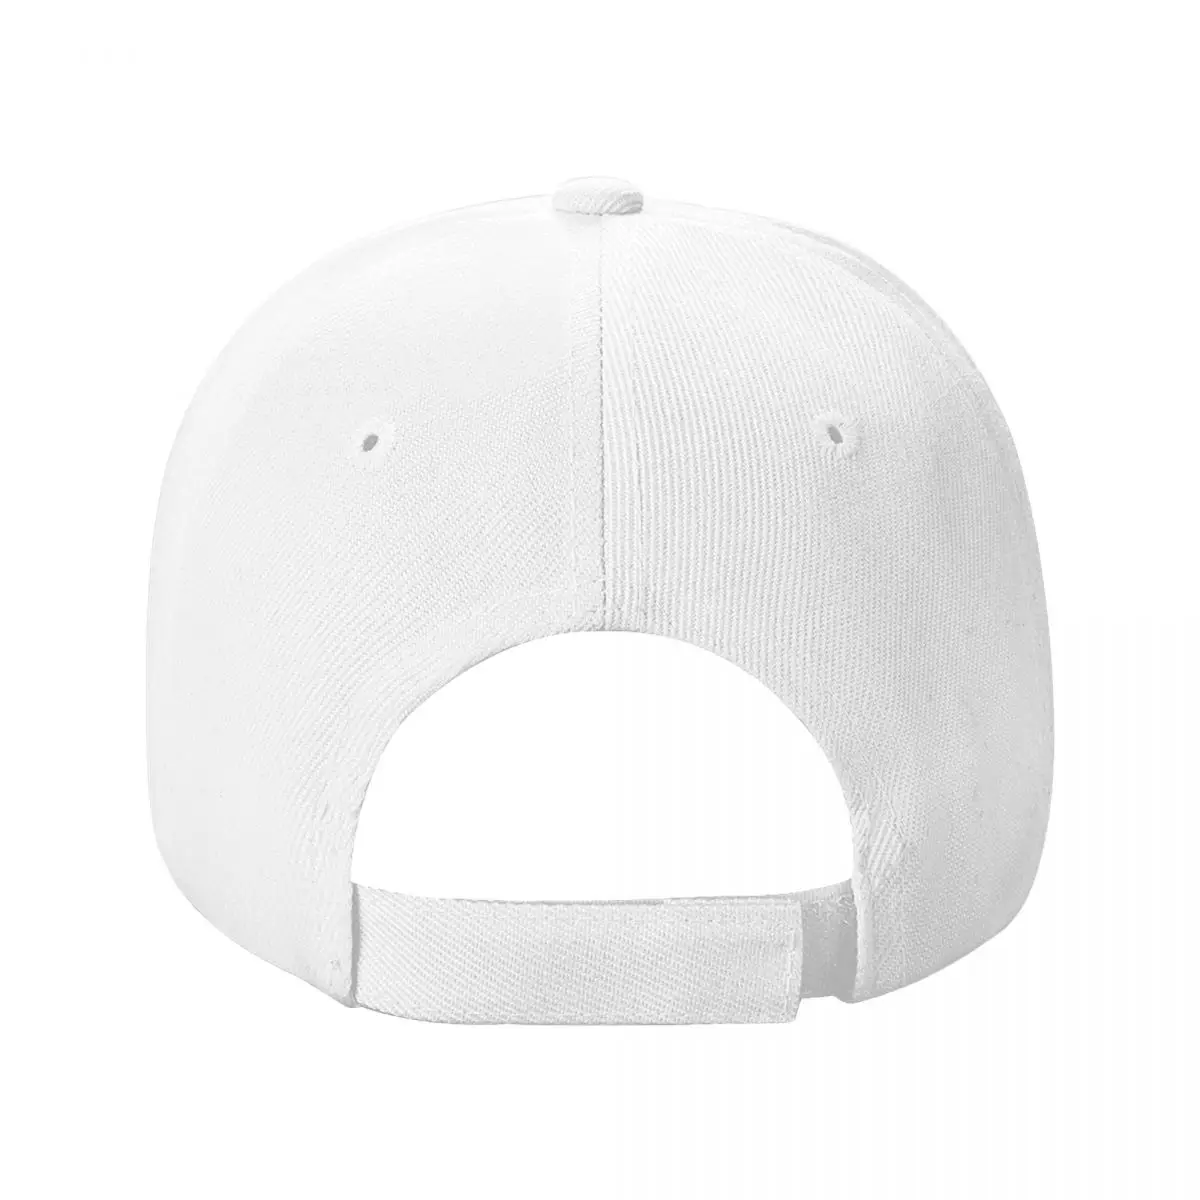 כובע בייסבול עבור גברים, נשים, כלי הלהקה וויסלר בציר שמש כובע הצמד חזרה כובע אלגנטי כובעים - 3